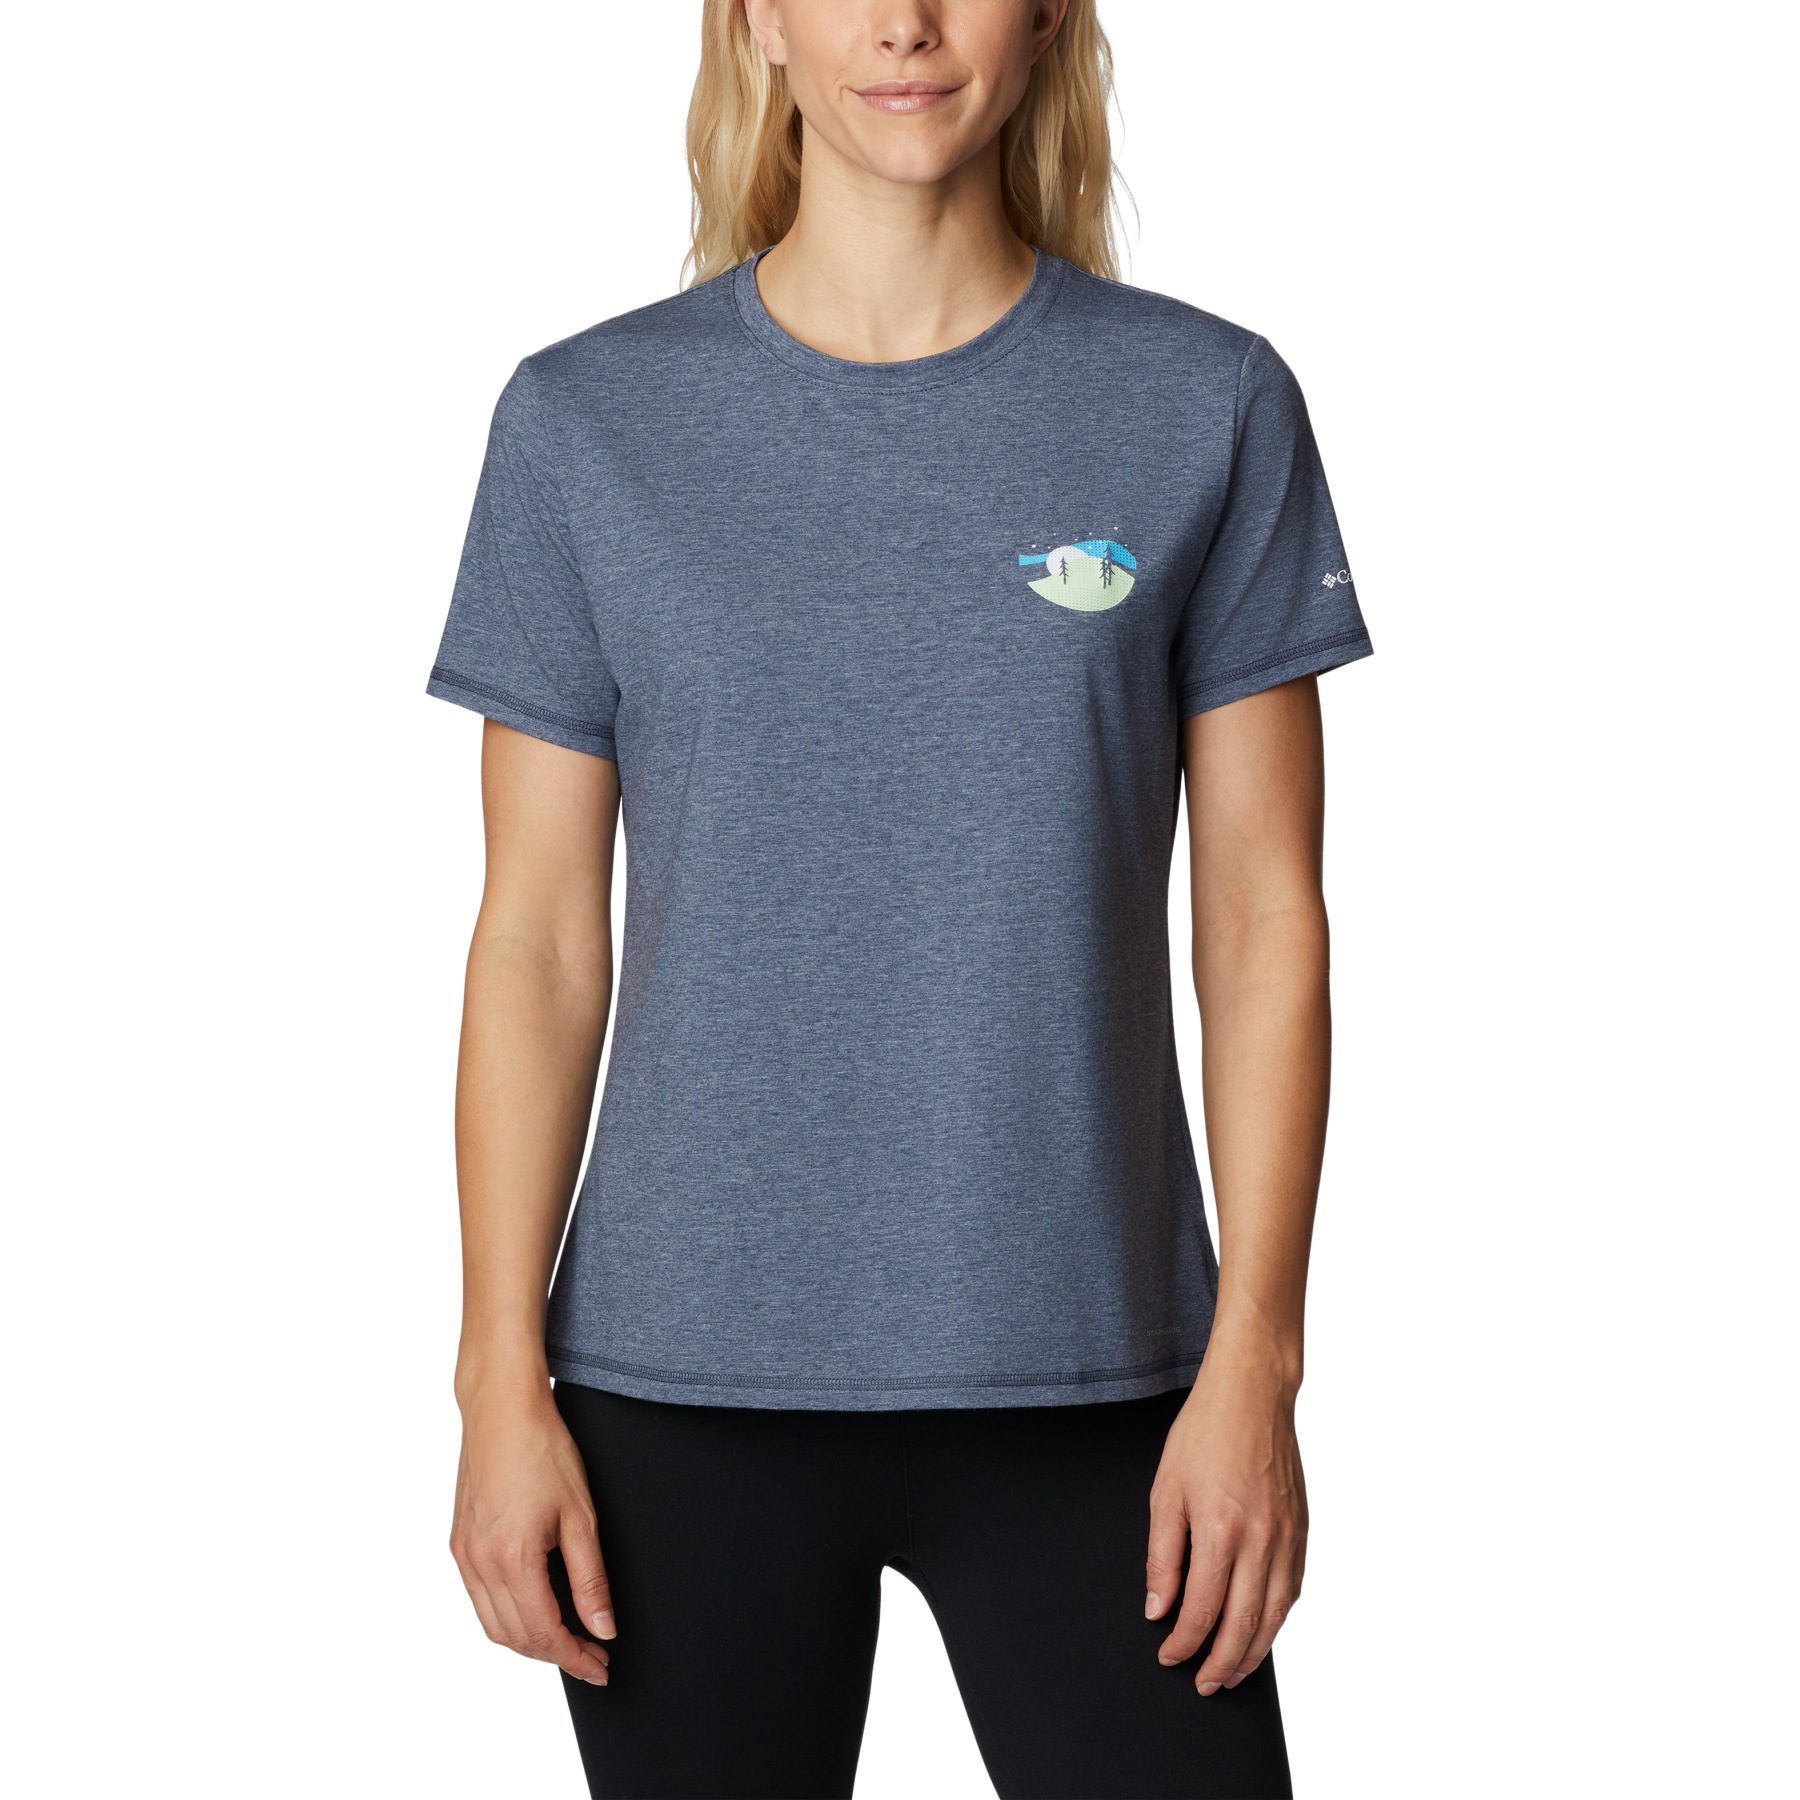 Produktbild von Columbia Sun Trek Graphic T-Shirt II Damen - Nocturnal/Night Sky Graphic